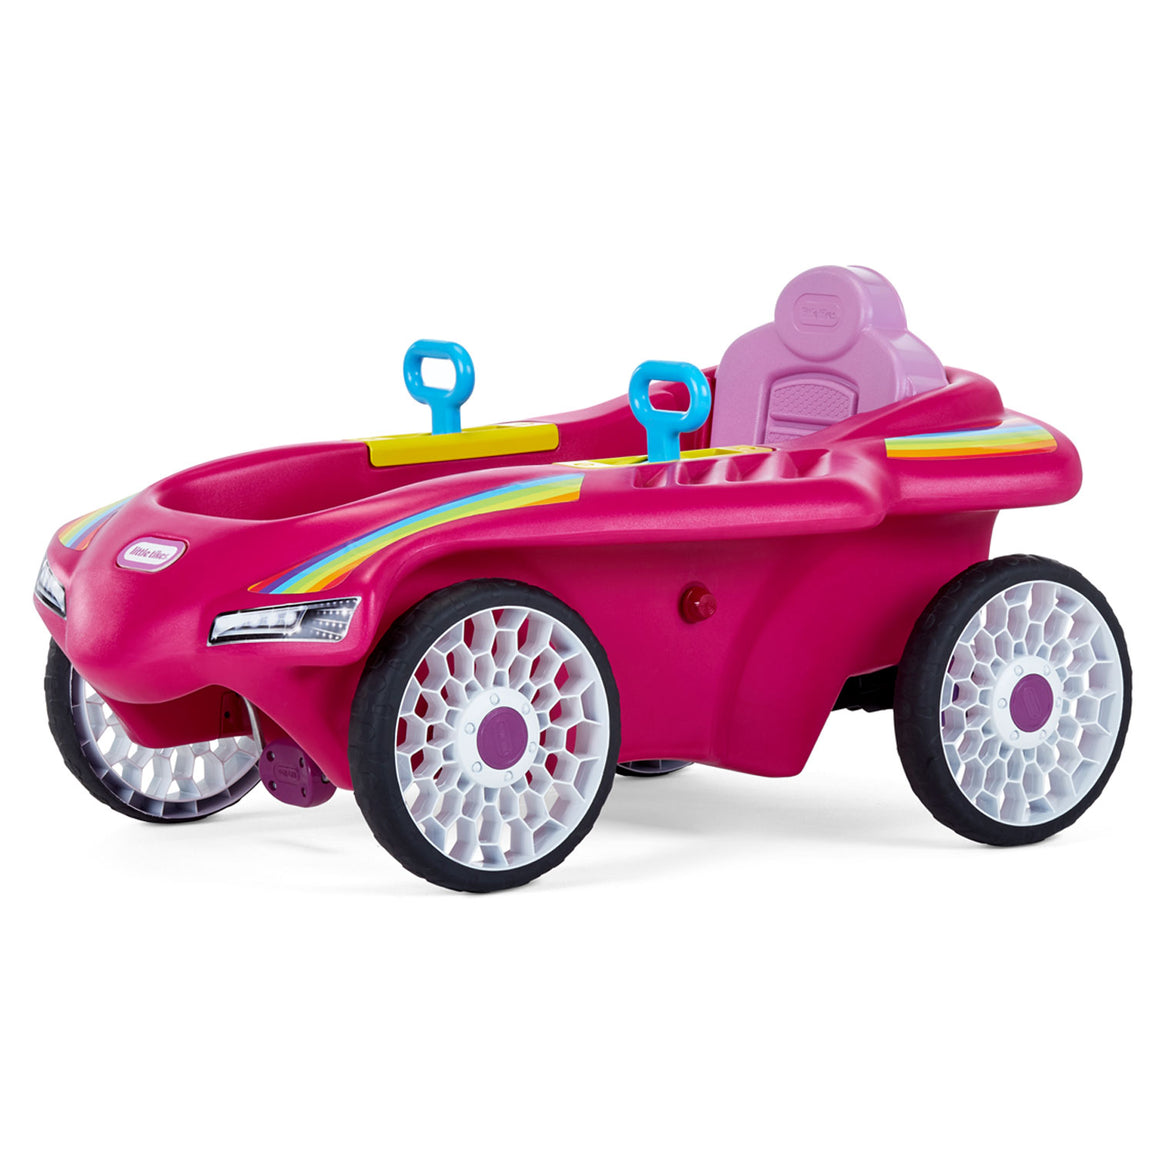 Jett Car Racer - Pink  Little Tikes – Official Little Tikes Website